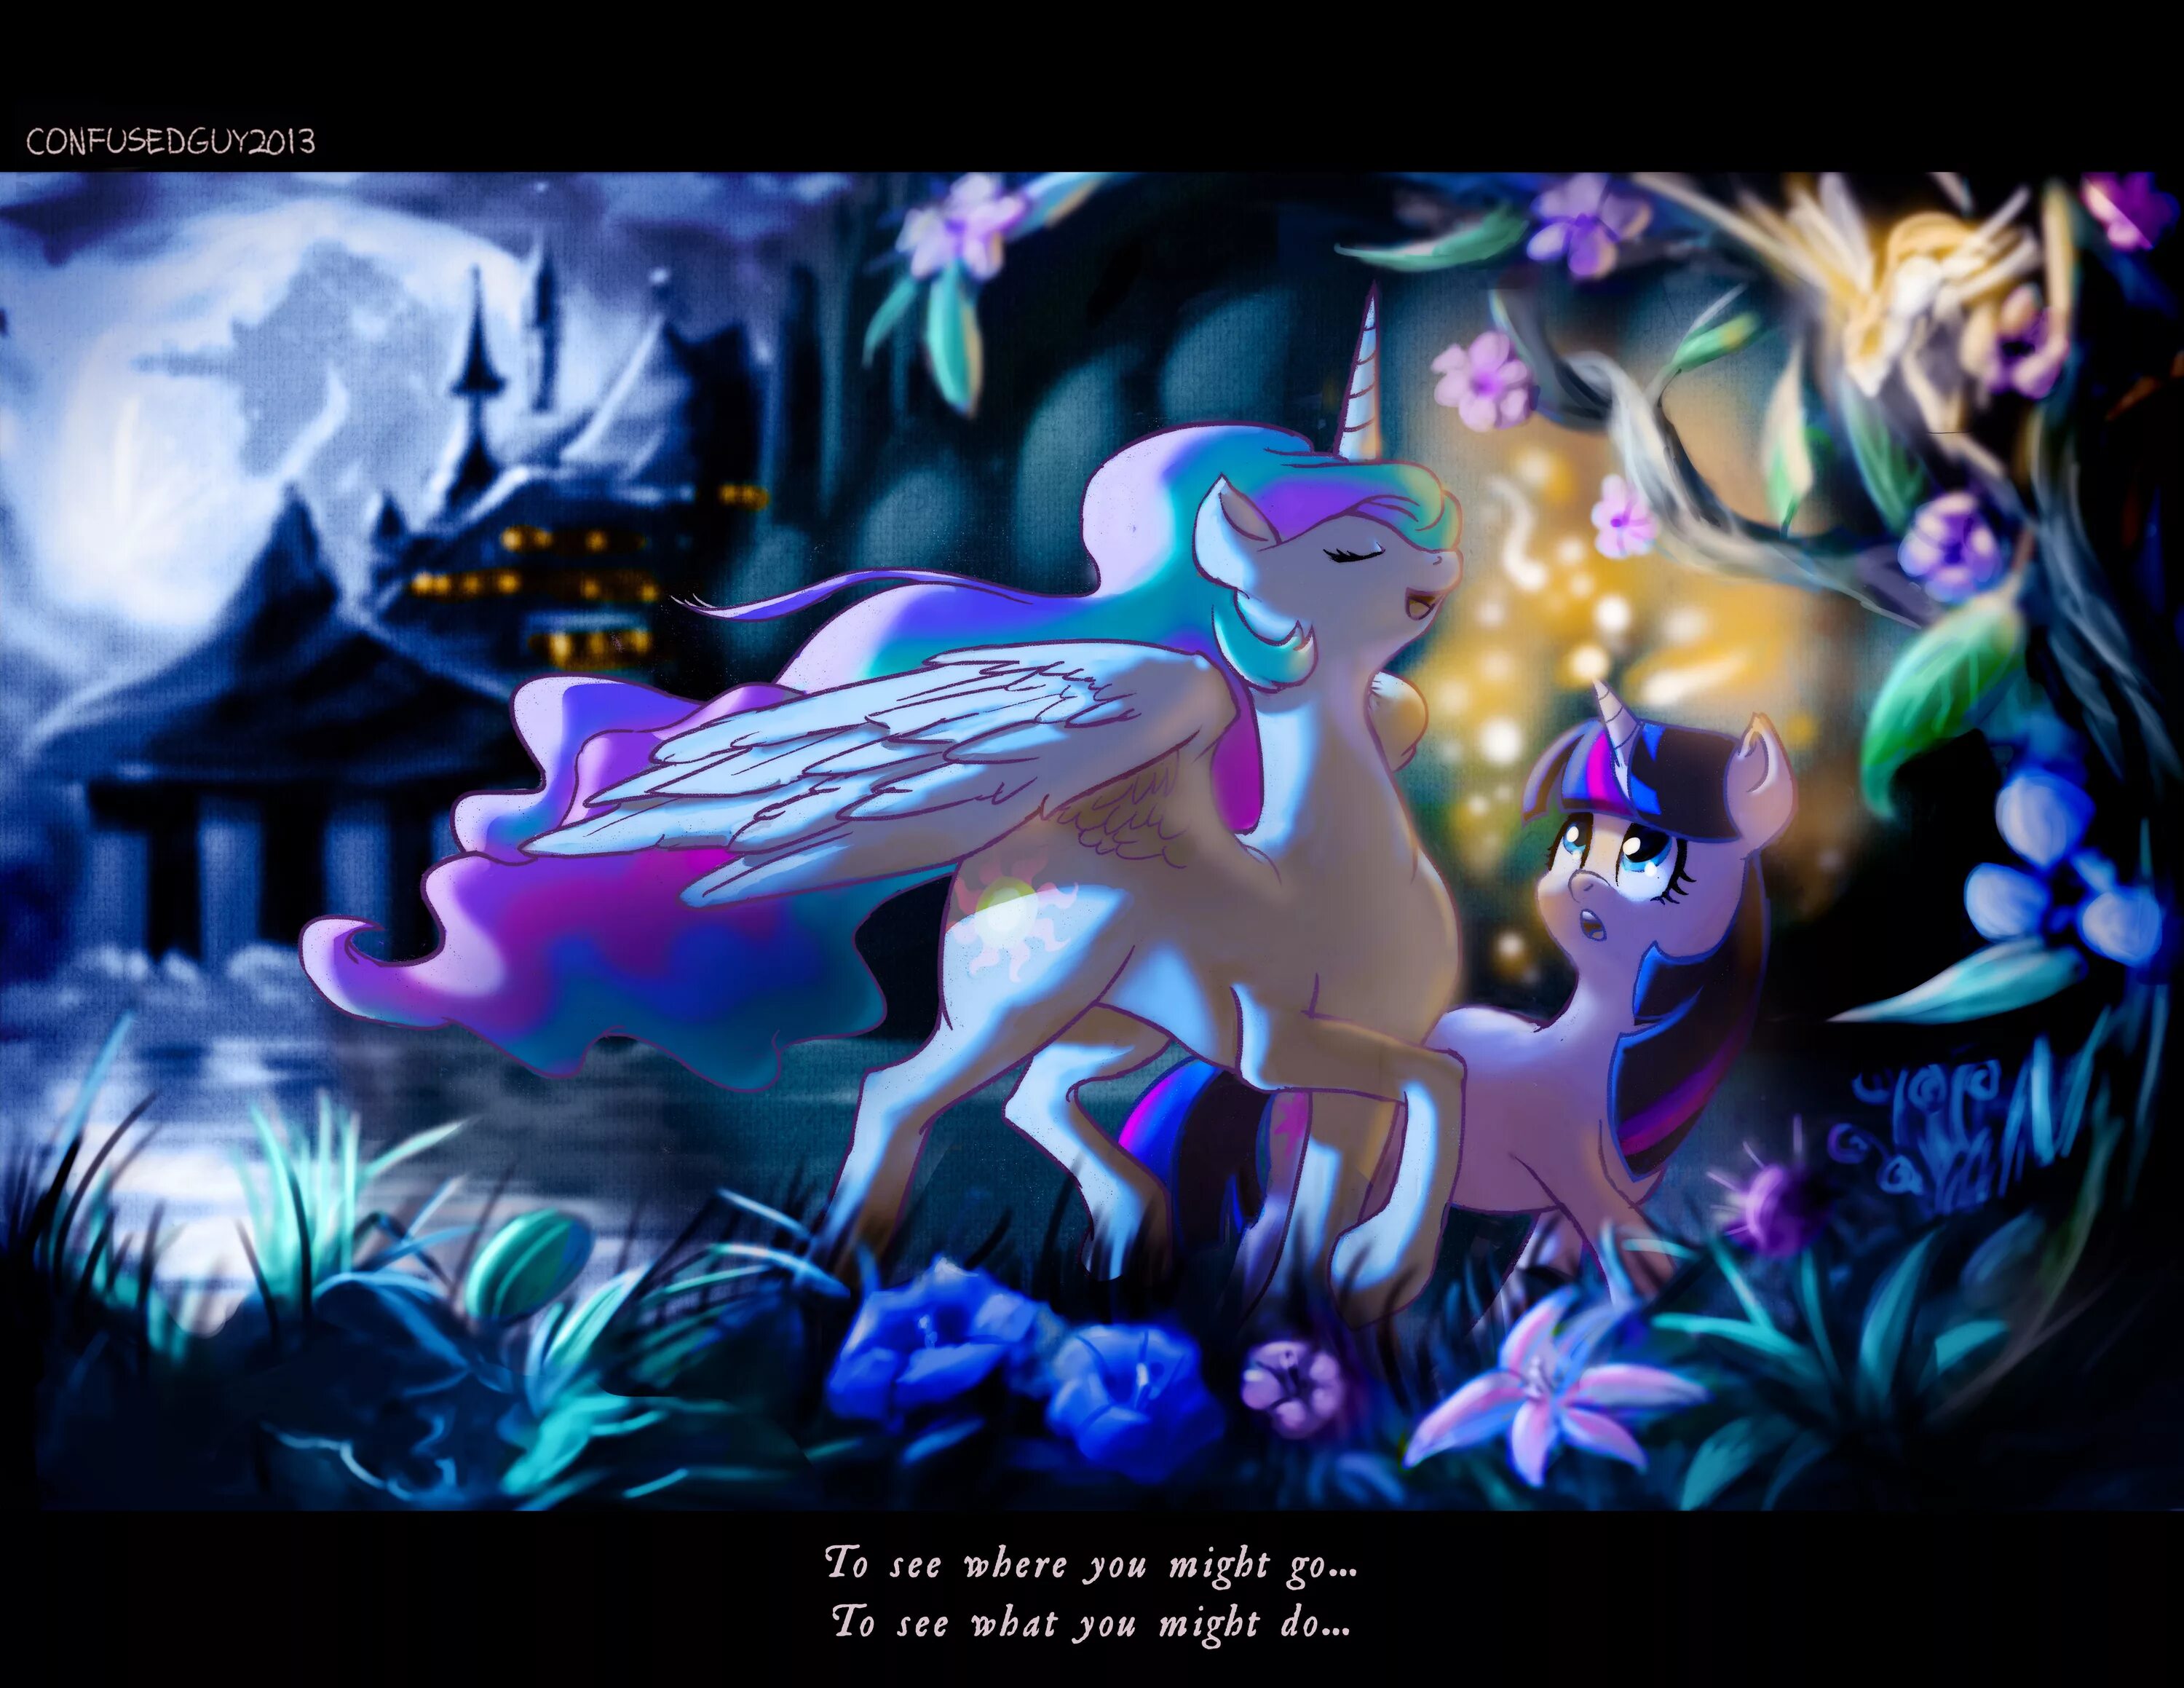 Май литл пони магия принцесс 9.2. МЛП магия принцесс. My little Pony магия принцесс Кантерлот. МЛП магия принцесс пони. Май Лито пони магич принцесс.